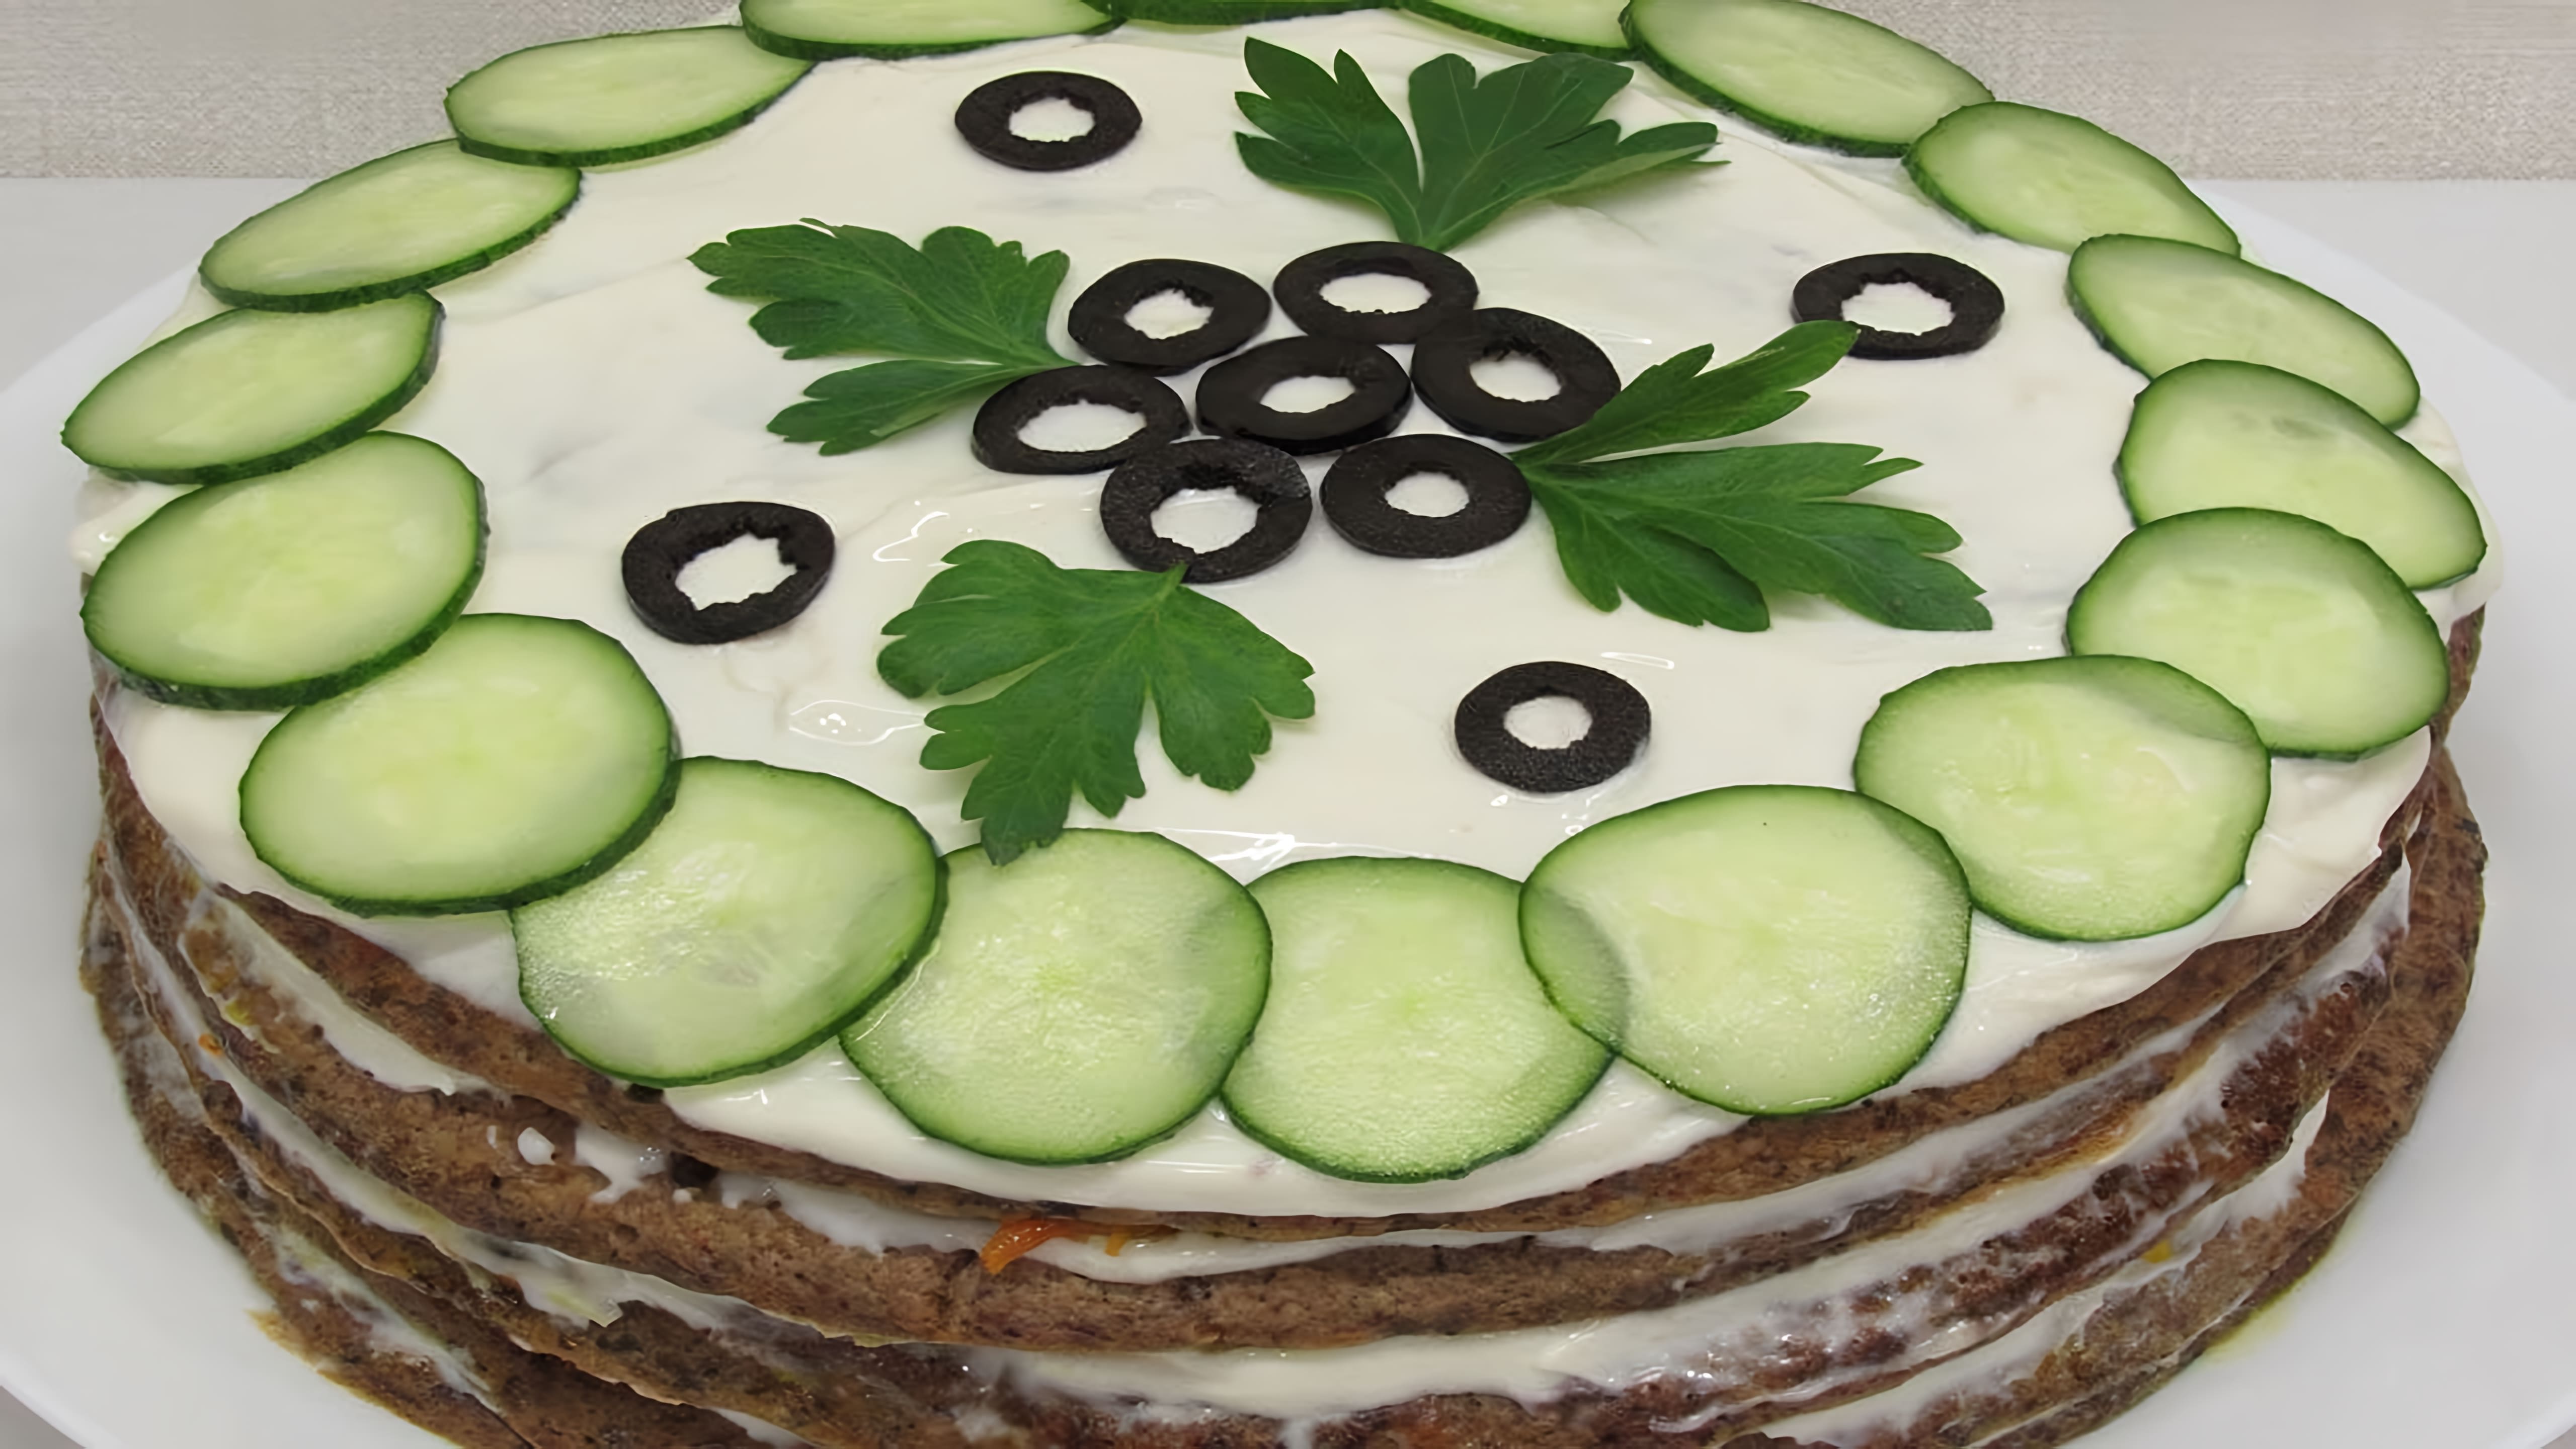 В этом видео демонстрируется рецепт приготовления печеночного торта